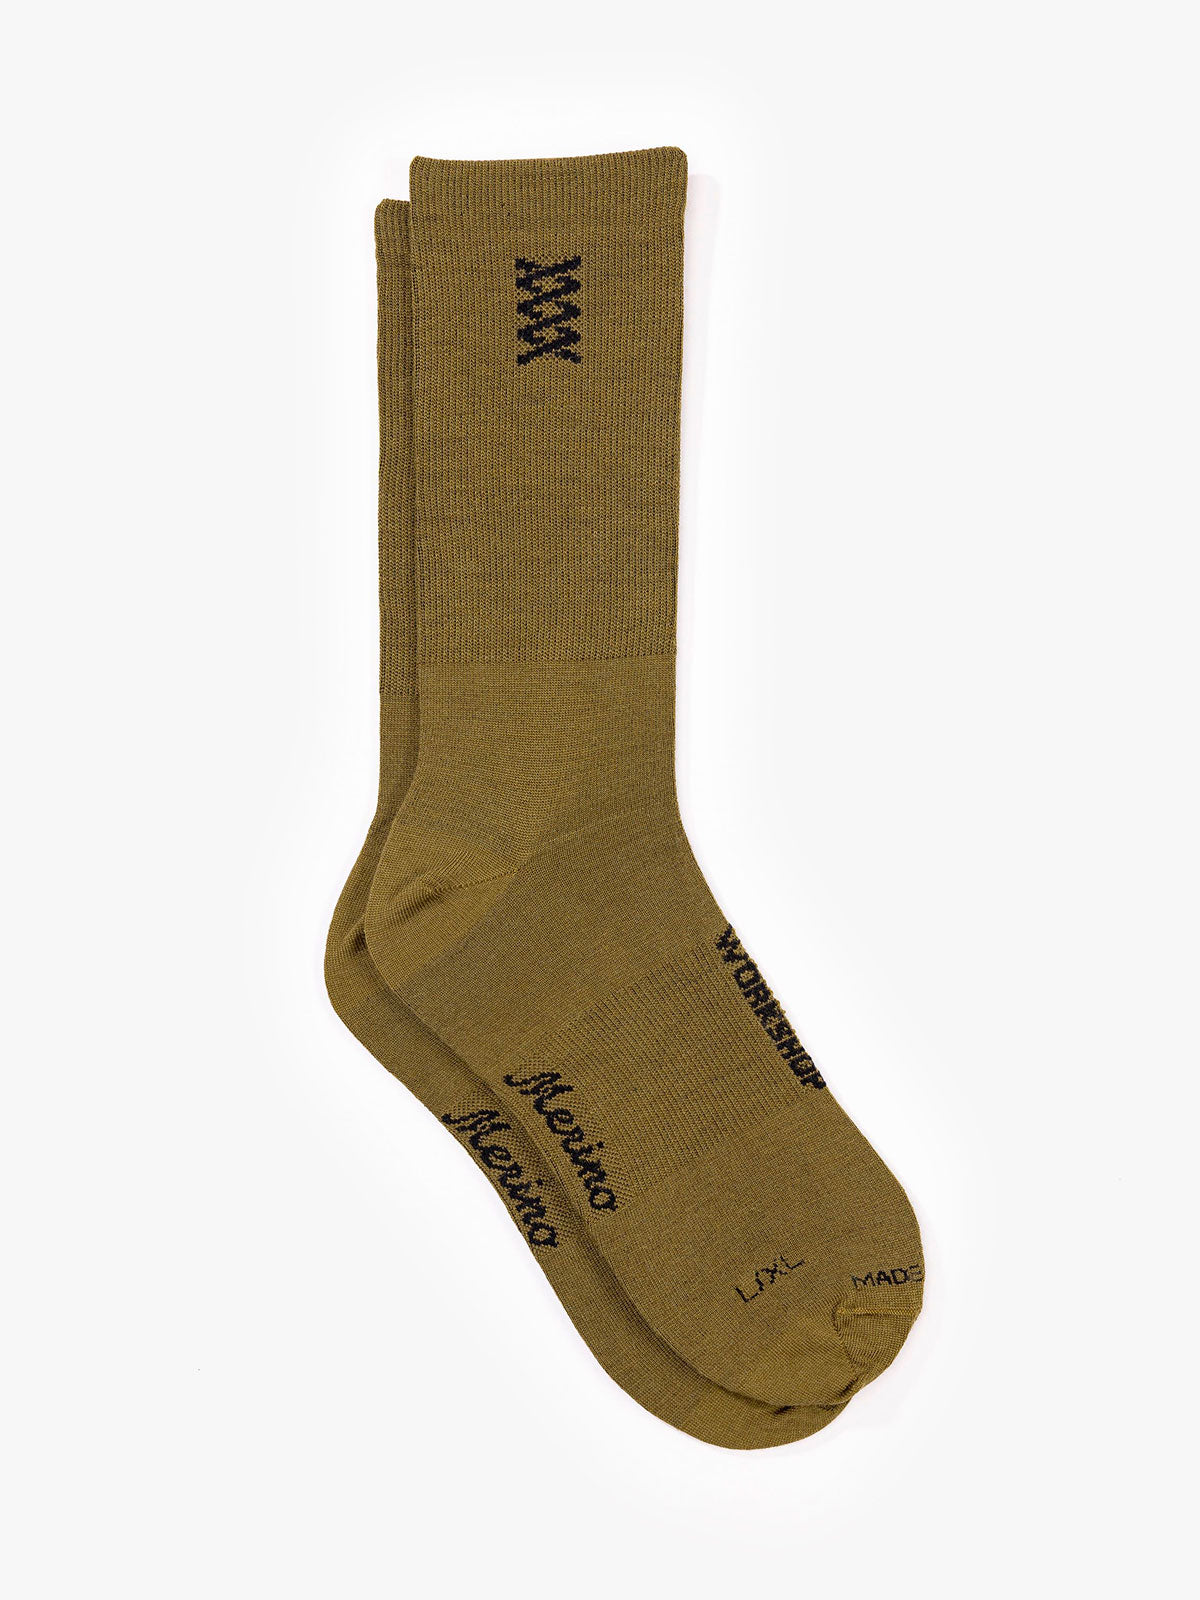 Mission Pro Wool Socks von Mission Workshop - Wetterfeste Taschen & Technische Bekleidung - San Francisco & Los Angeles - Für die Ewigkeit gebaut - Garantiert